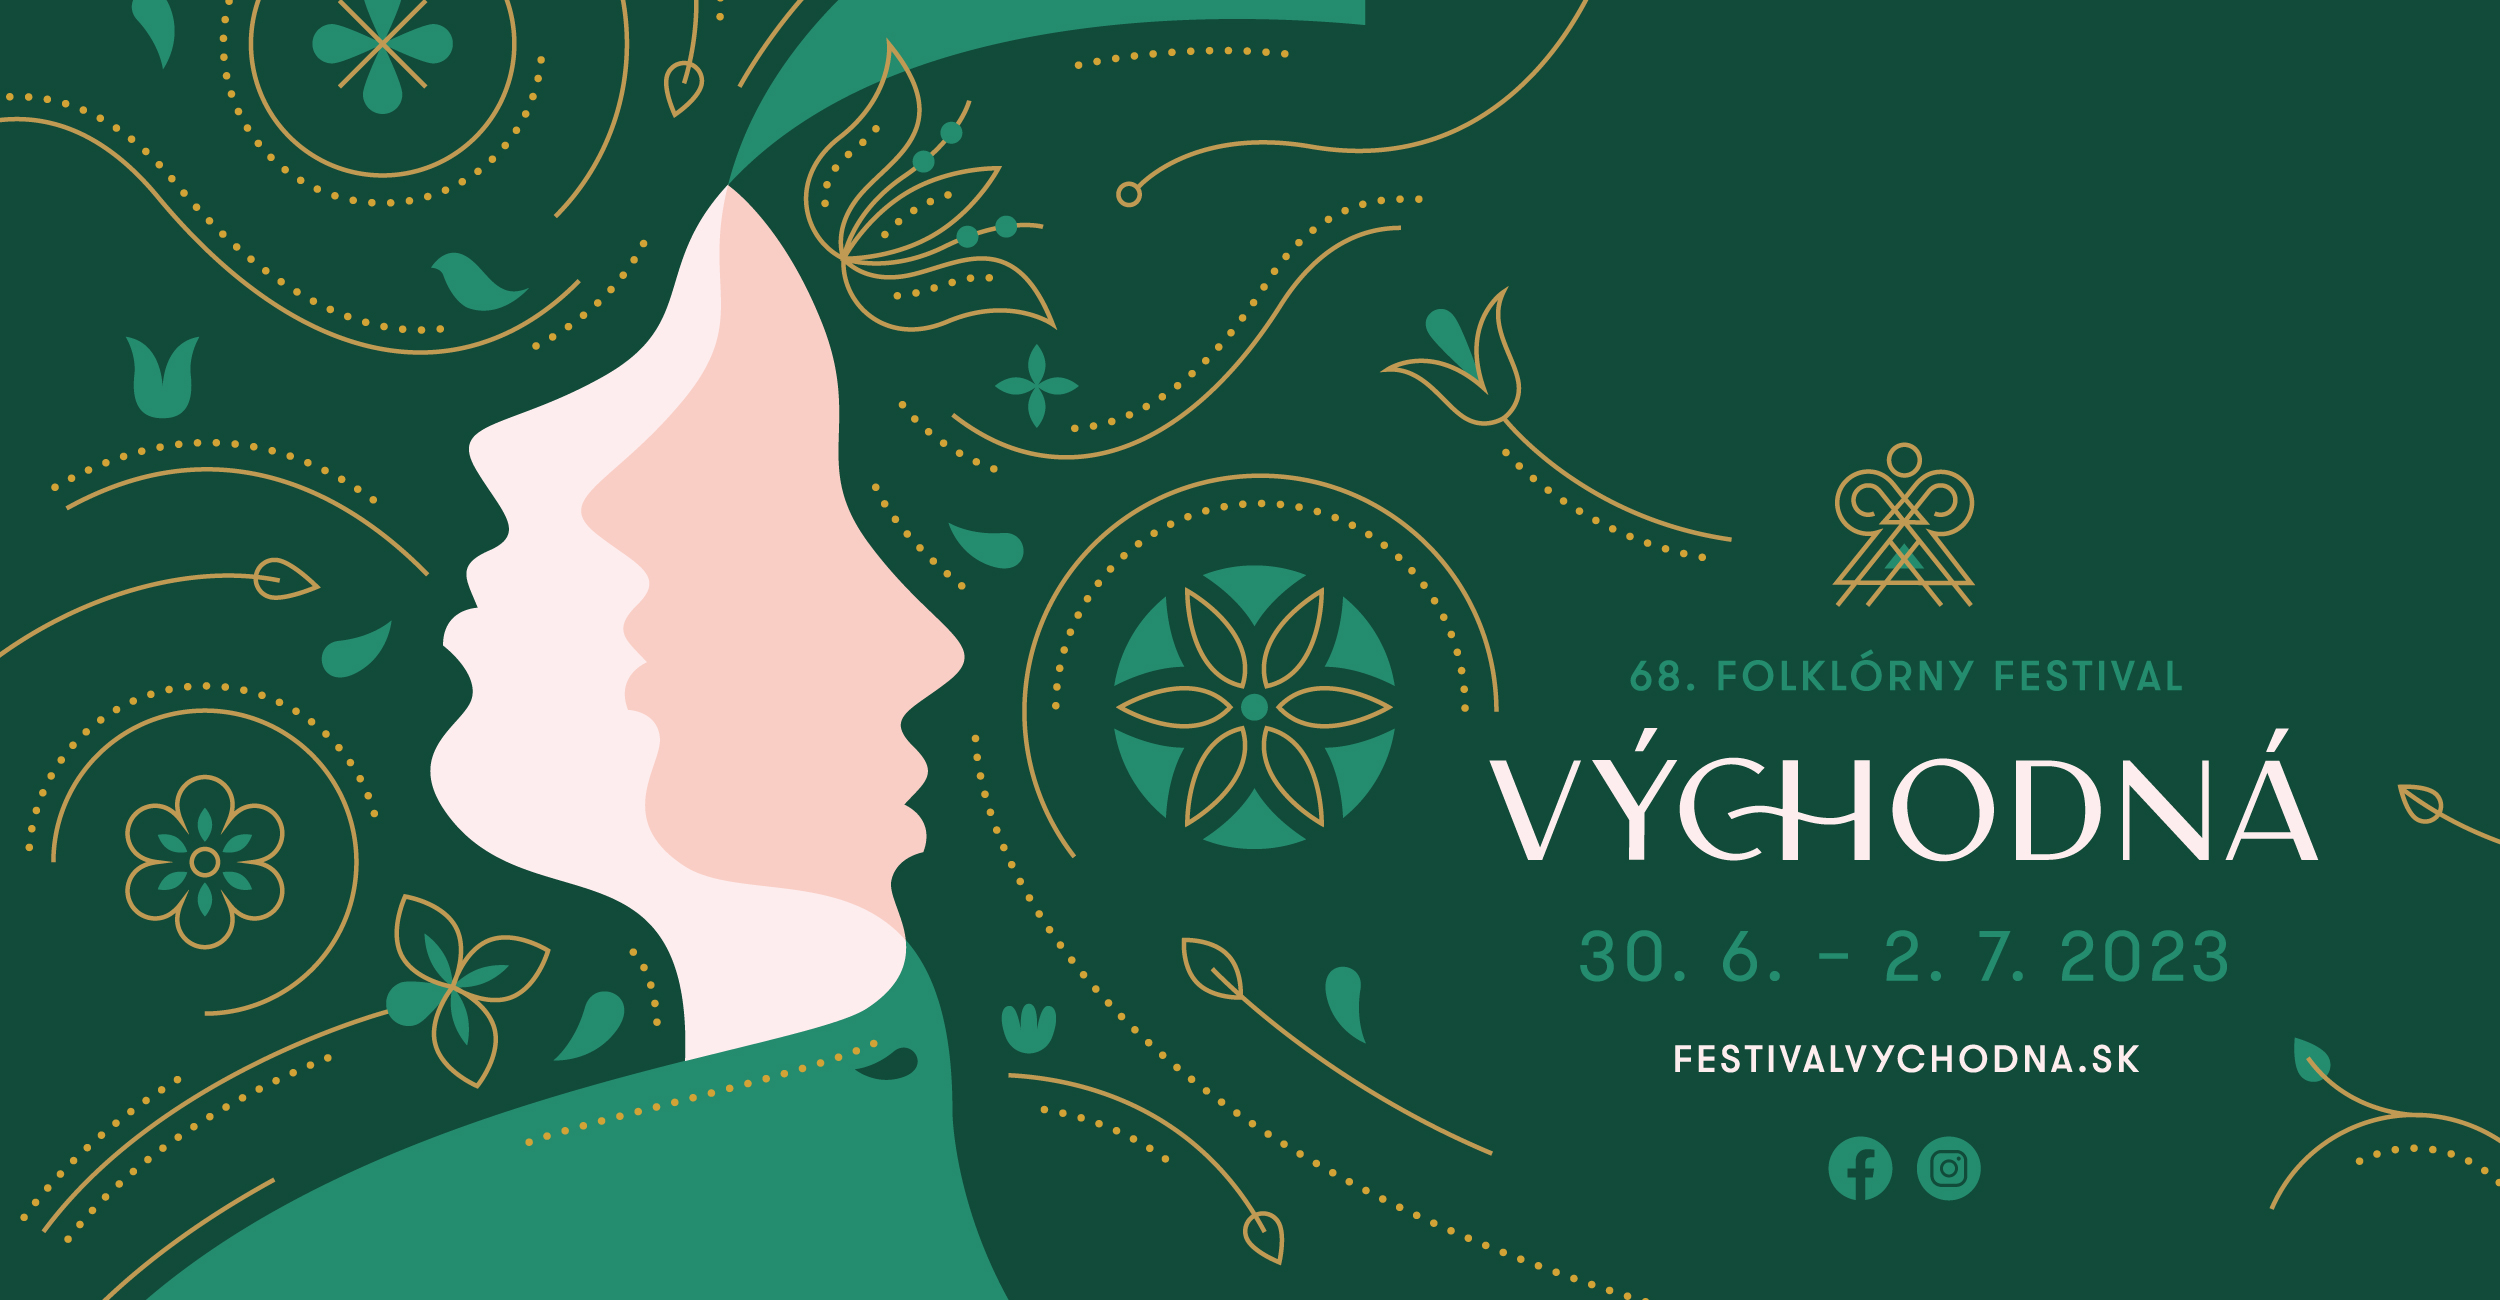 68. folklórny festival Východná, 30. 6. - 2. 7. 2023